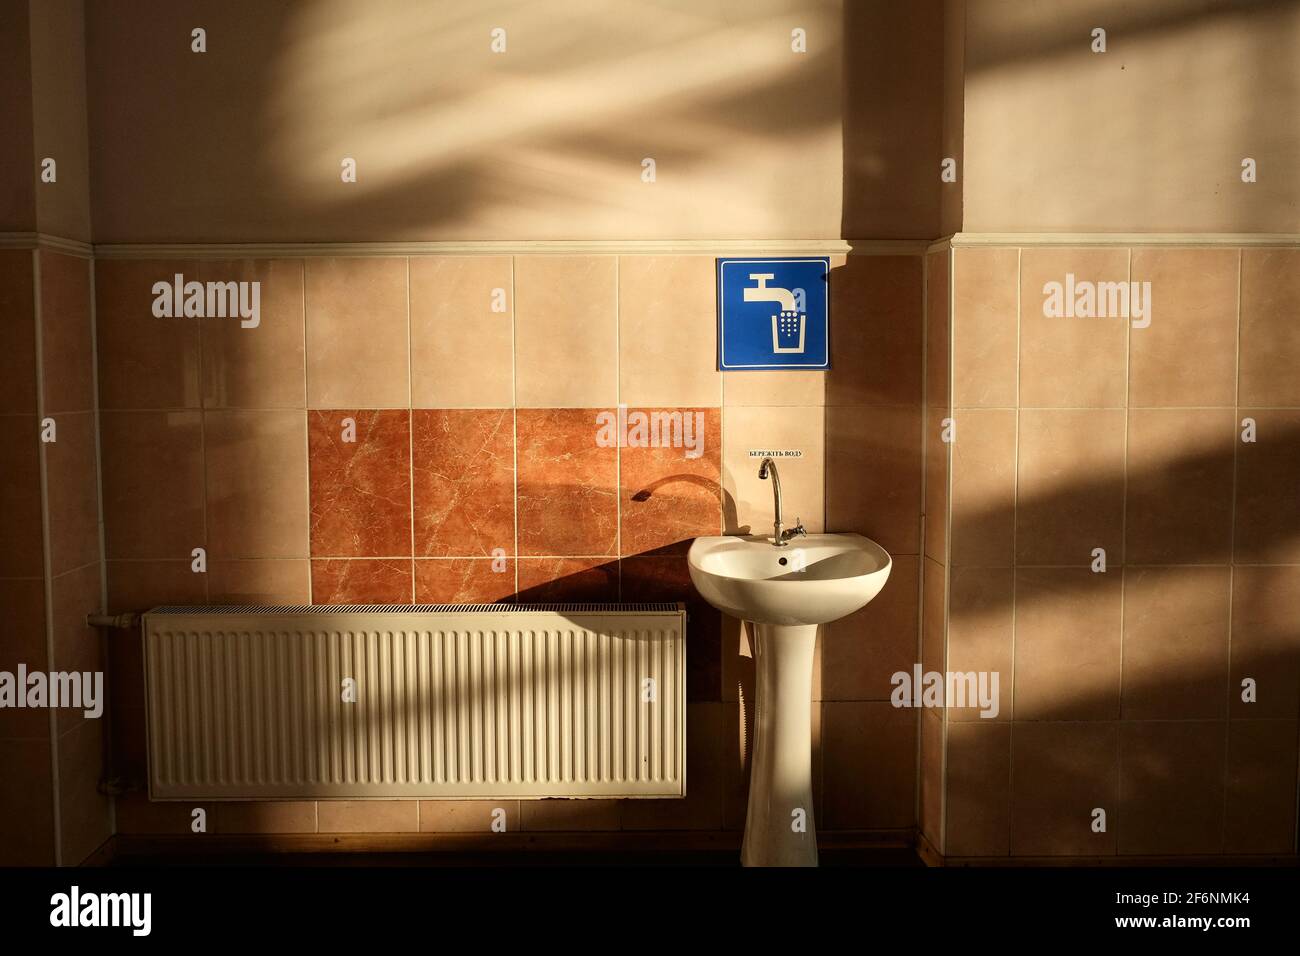 Weißes Waschbecken in der Nähe einer gefliesten Wand und blaues Zapfschild in einer Wartehalle des Bahnhofs, Pomitna, Ukraine. Kontrast zwischen Morgenlicht und Schatten Stockfoto